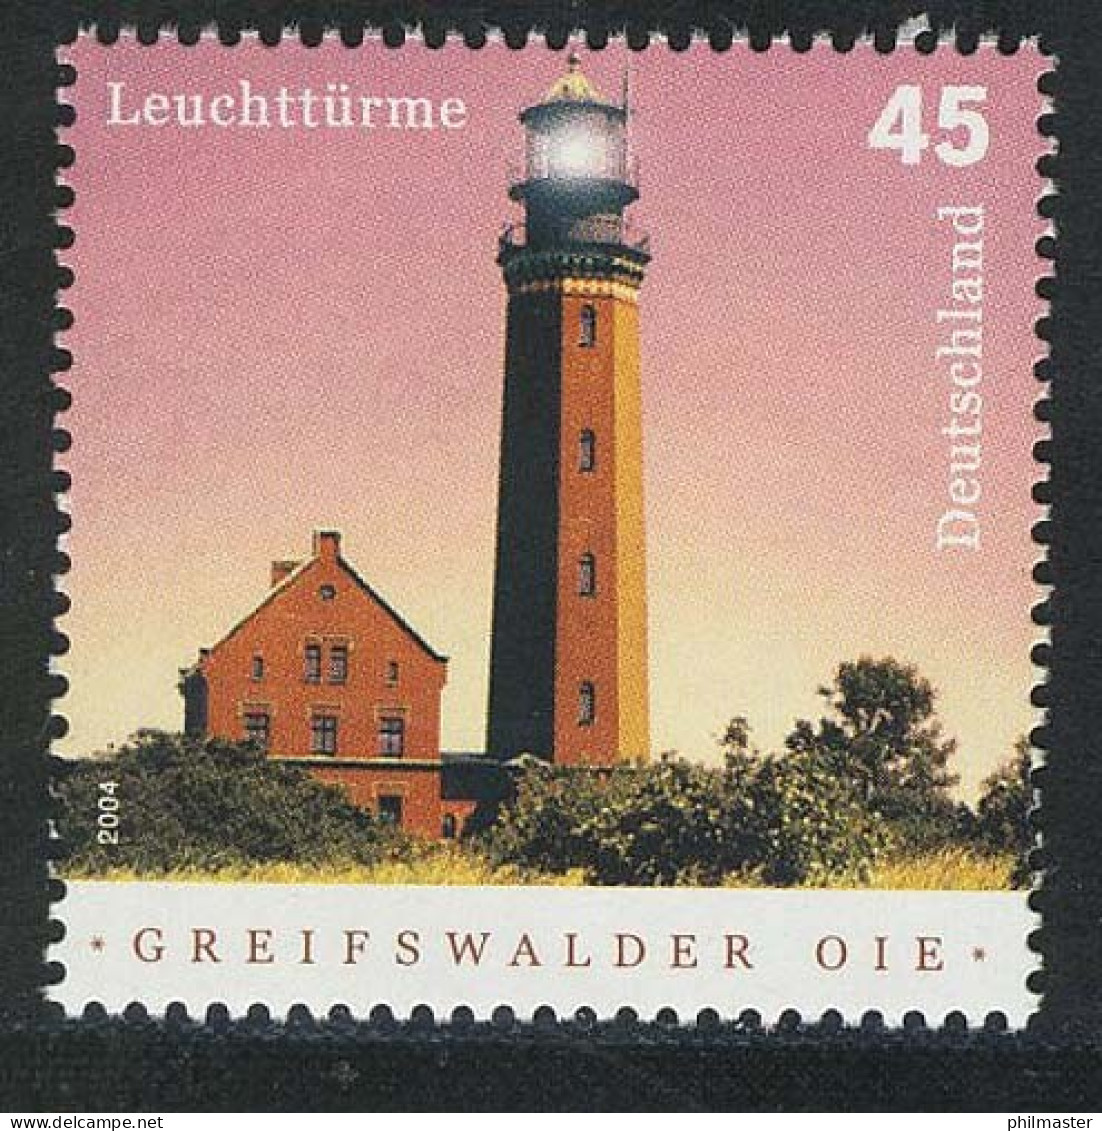 2409 Leuchtturm Greifswalder Oie, 10 Einzelmarken, Alle Postfrisch ** / MNH - Neufs